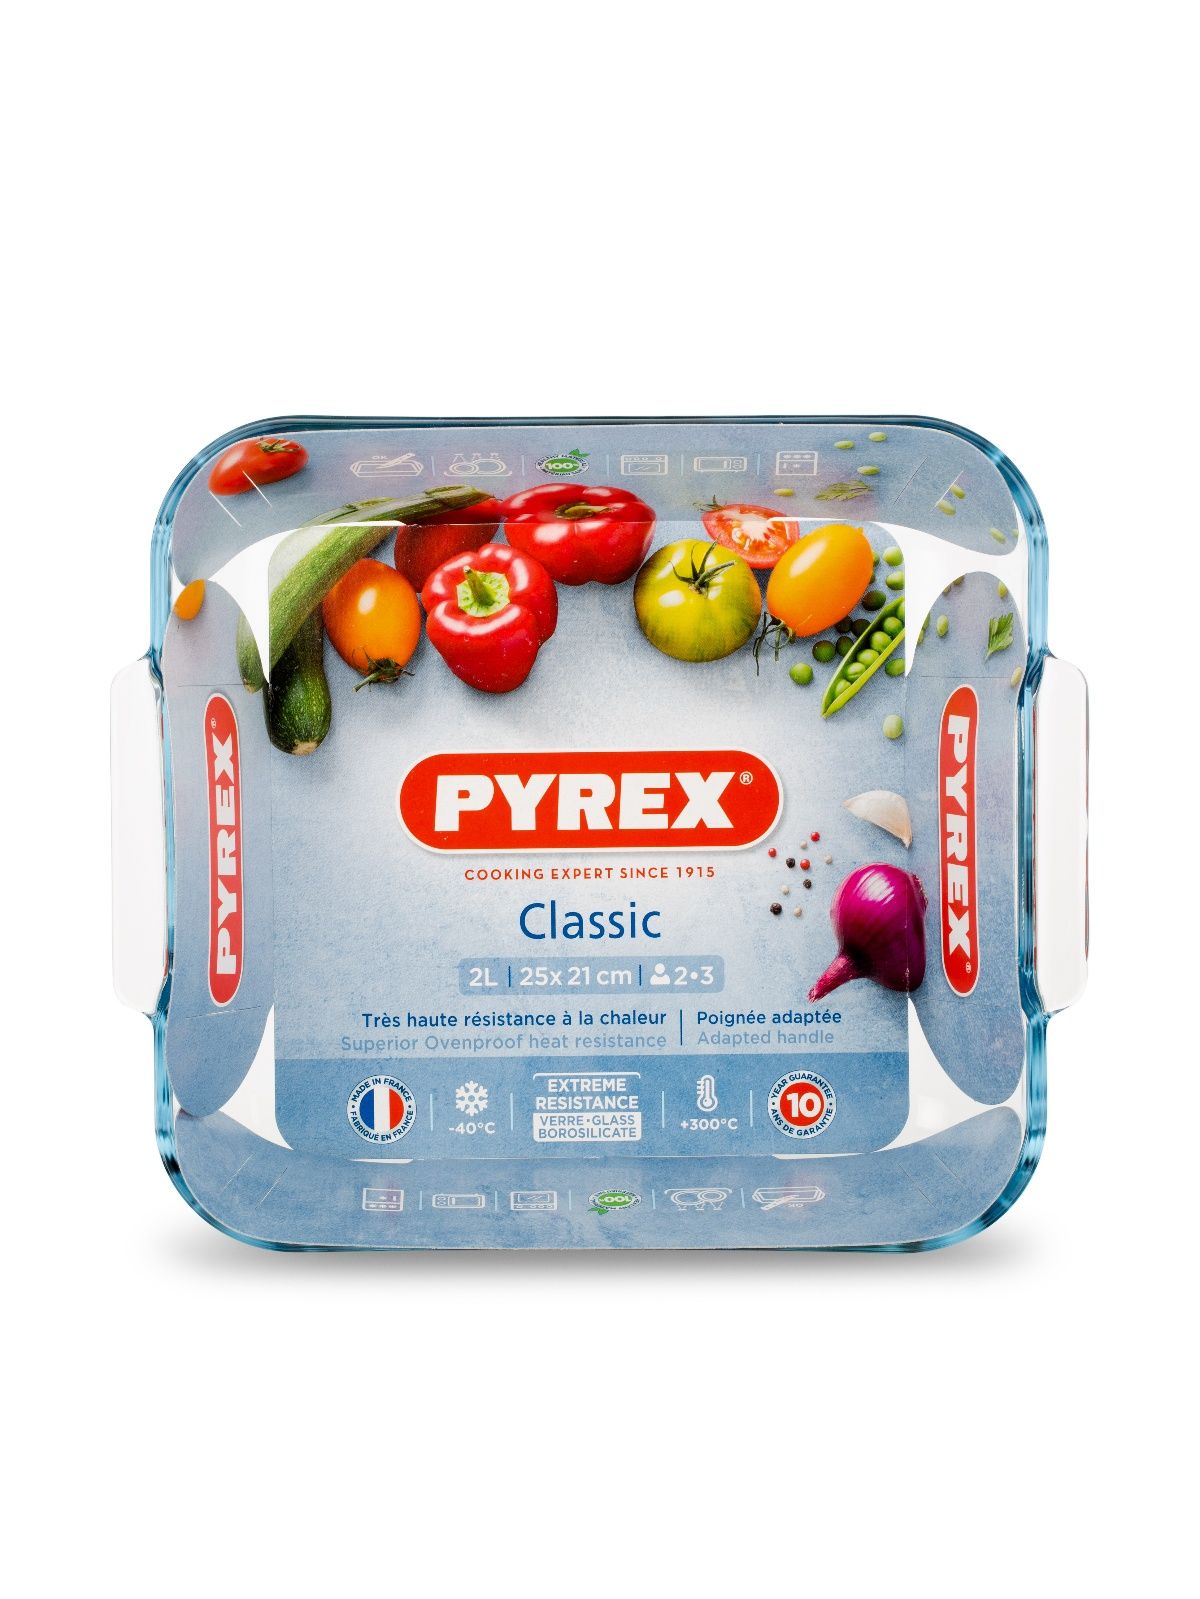 Блюдо для запекания и выпечки SMART COOKING 25x21см квадратное PYREX 220B000/7046 блюдо квадратное bulk 20x17см pyrex 211bn00 b240